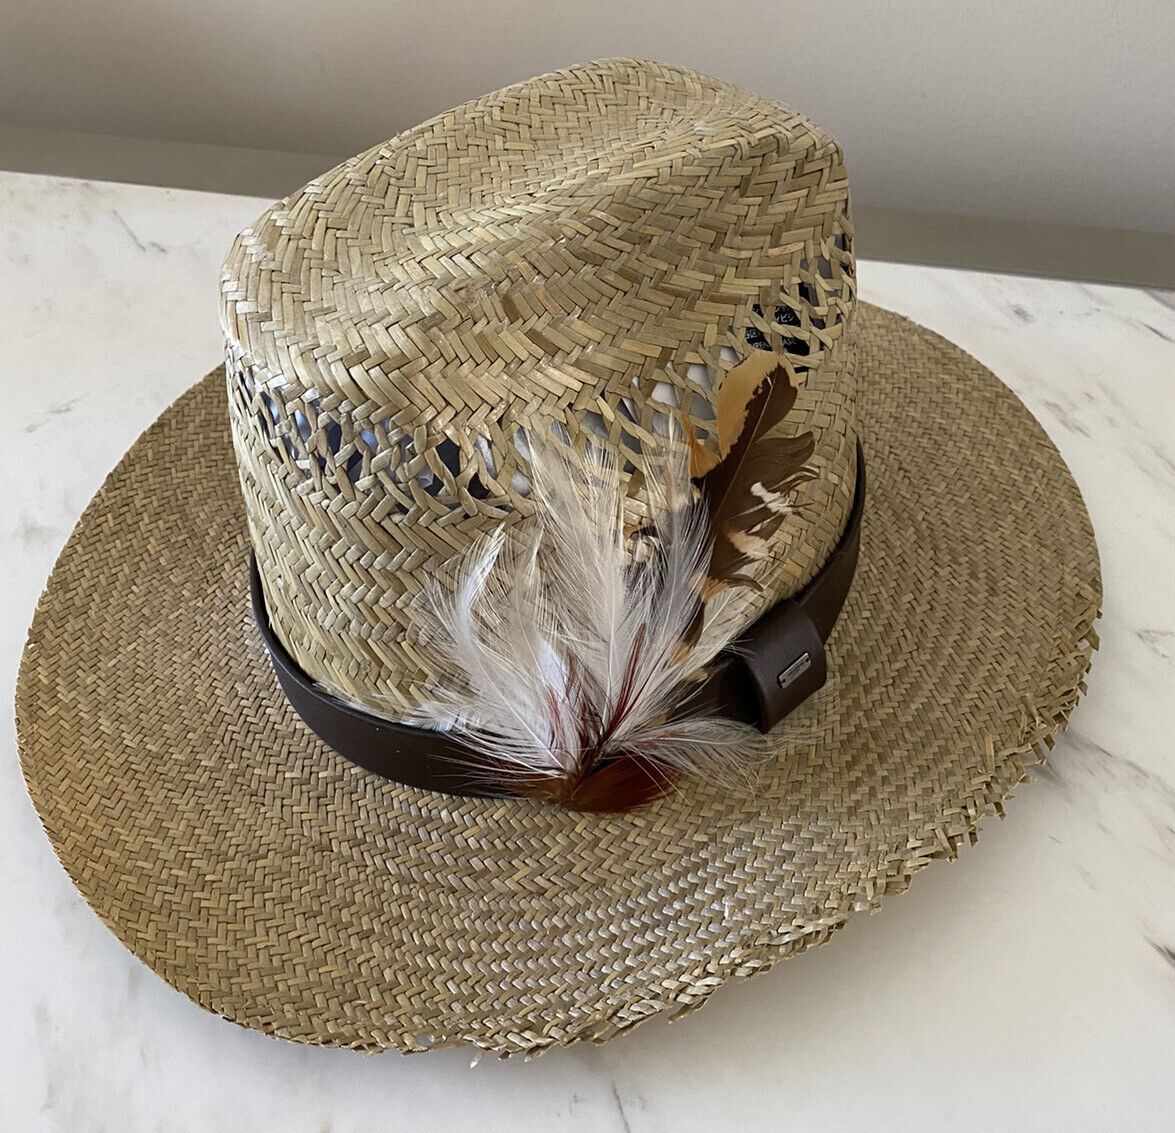 NWT 895 долларов США Соломенная ковбойская шляпа Saint Laurent с кожей и перьями Коричневая M